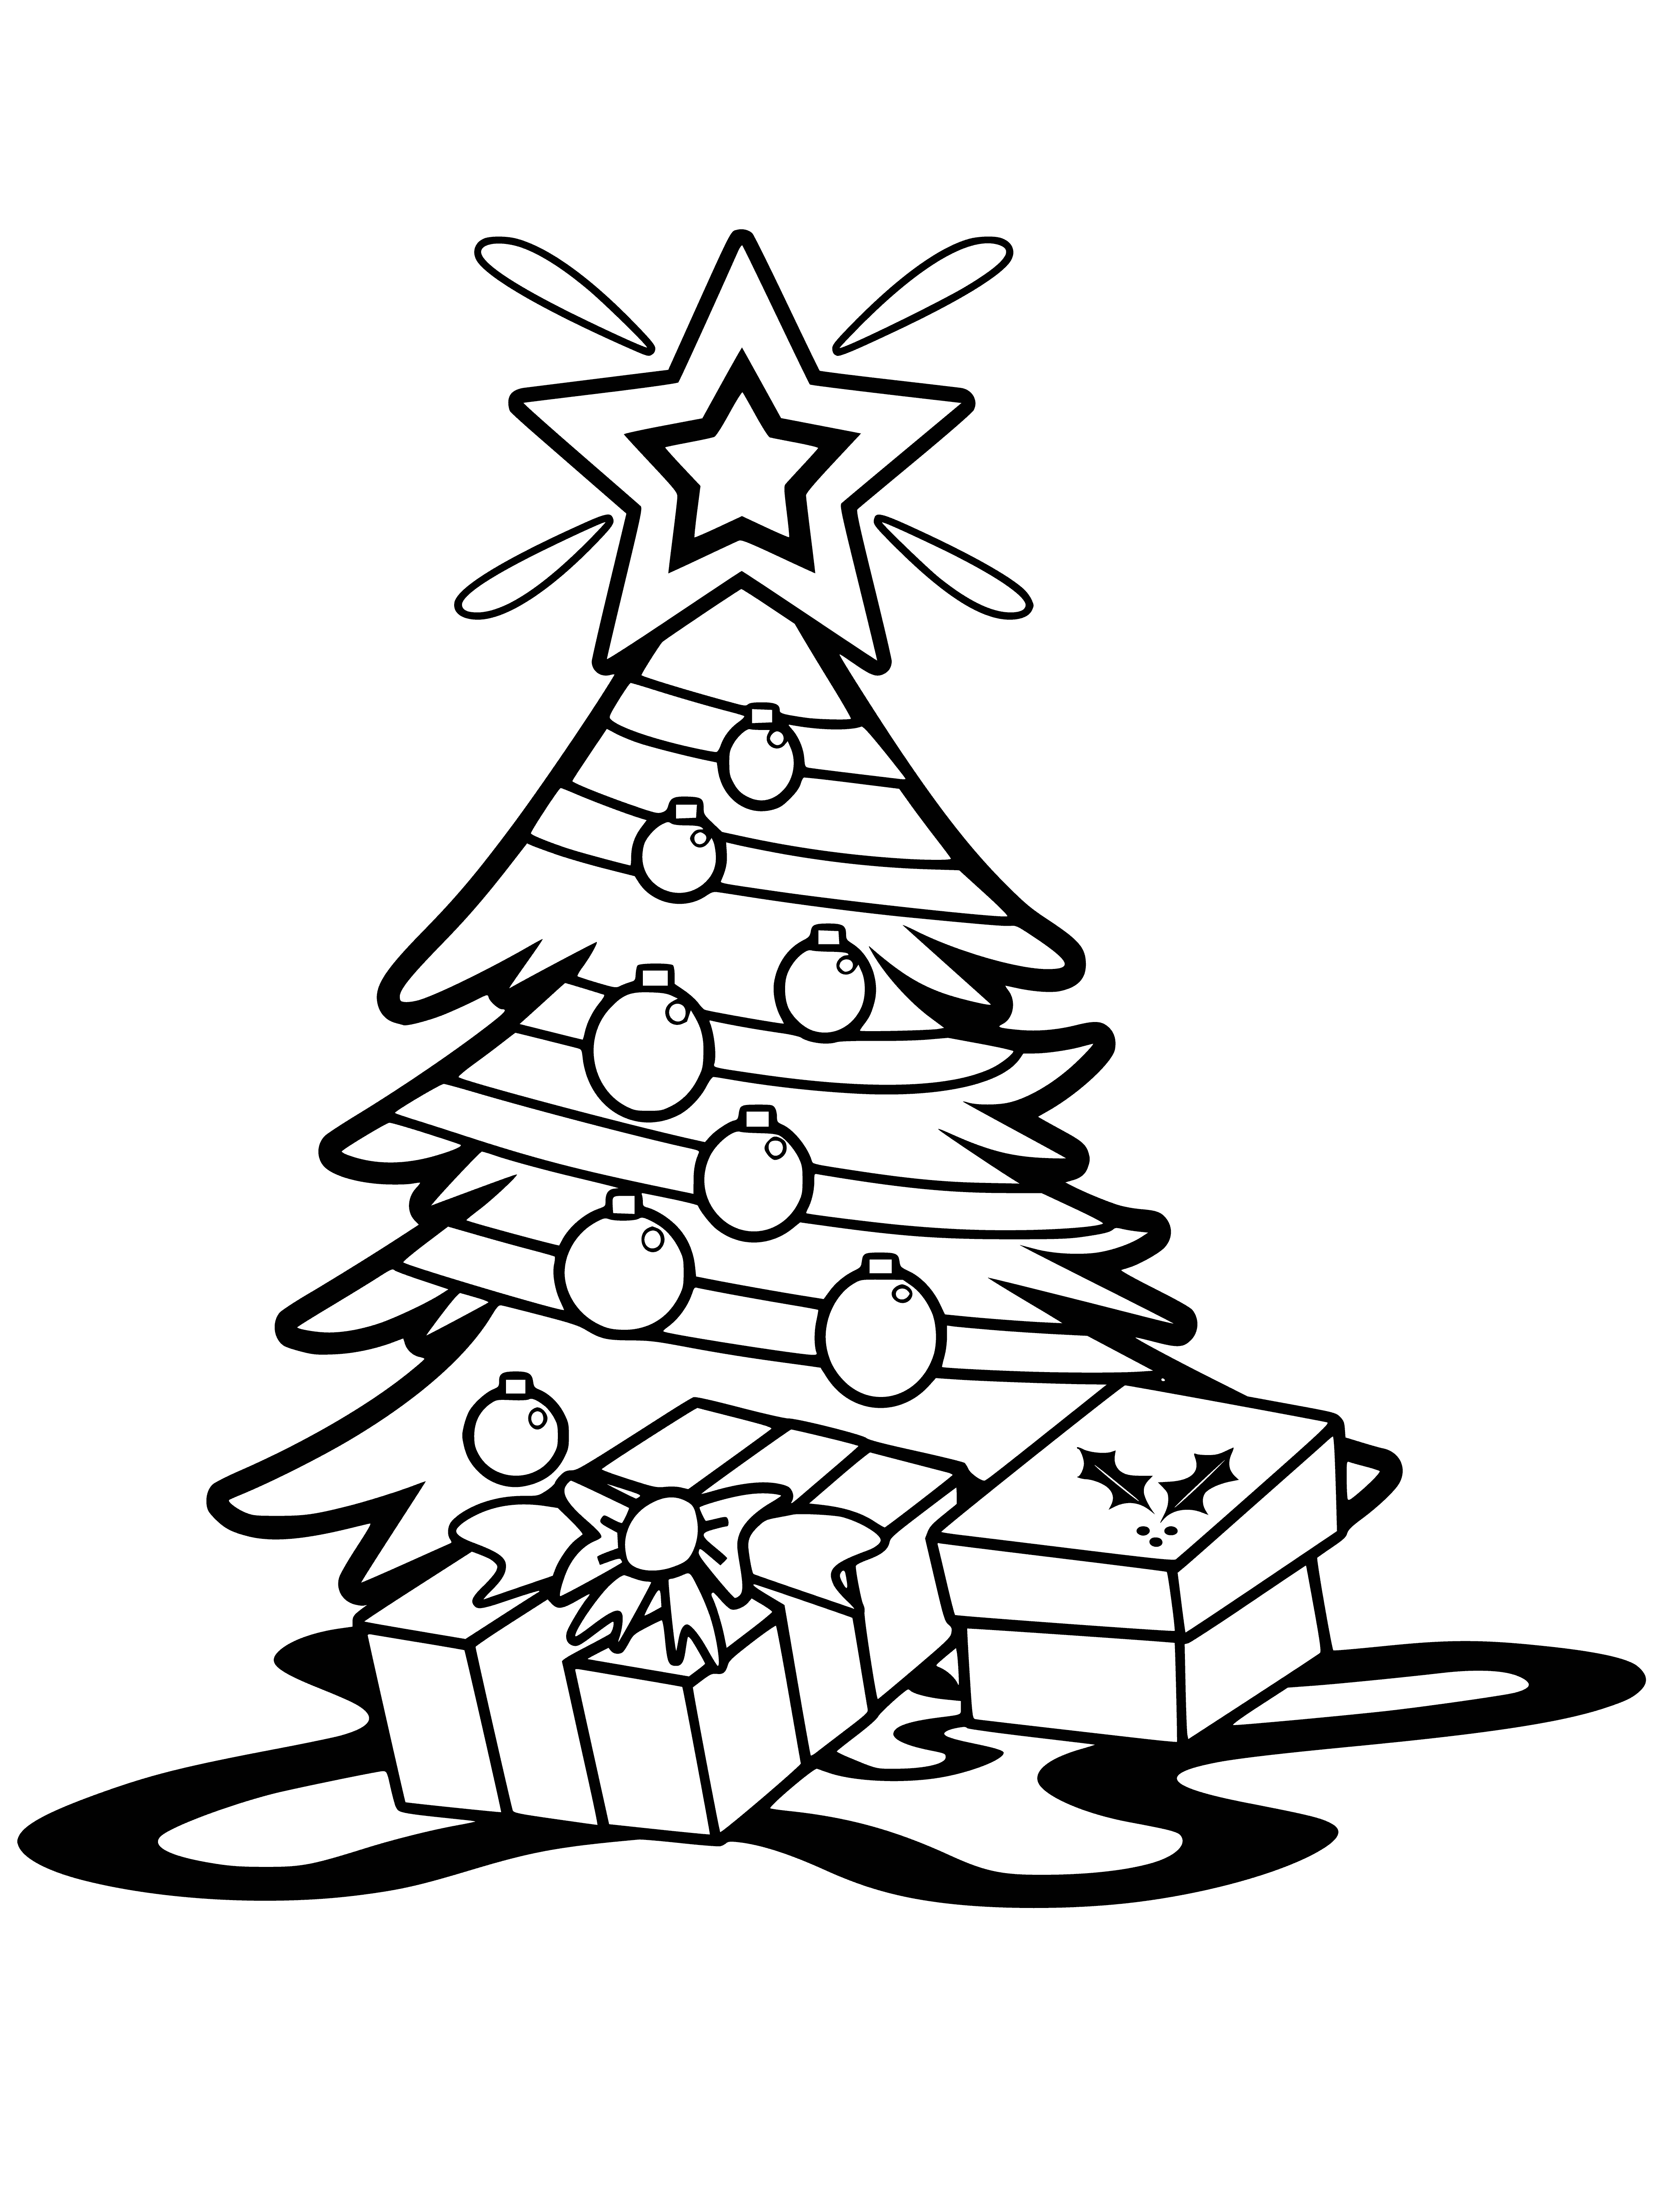 Weihnachtsbaum mit Stern Malseite